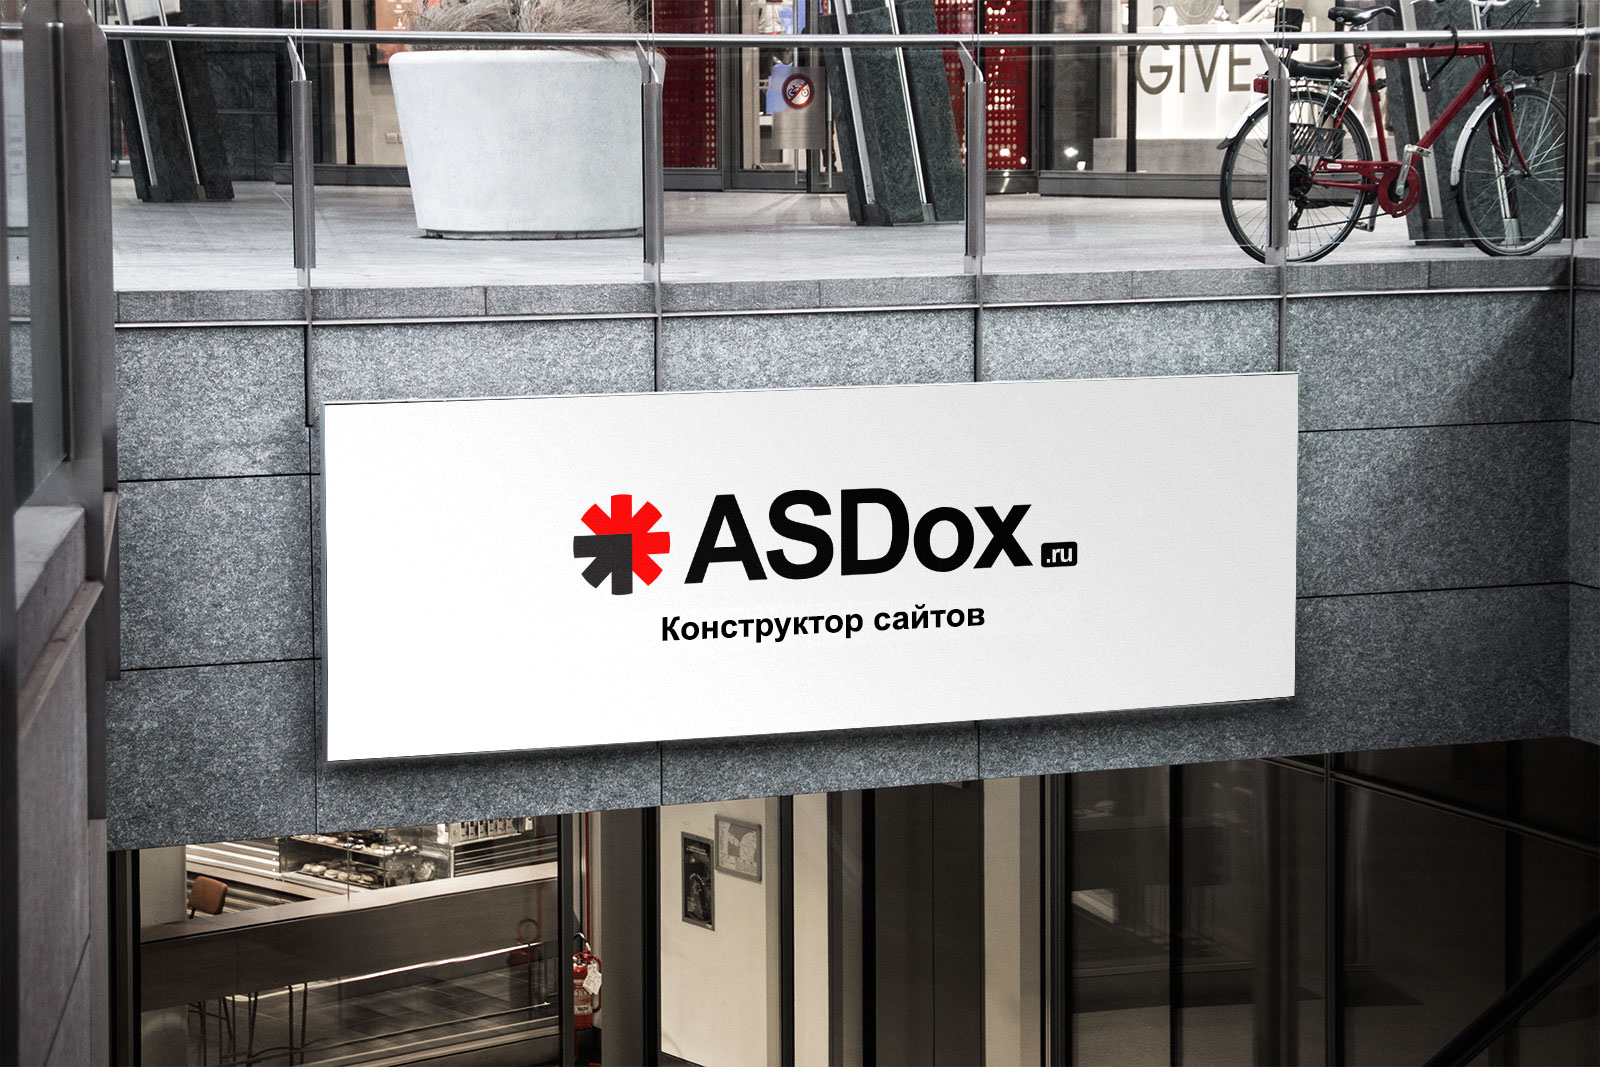 ASDox.ru